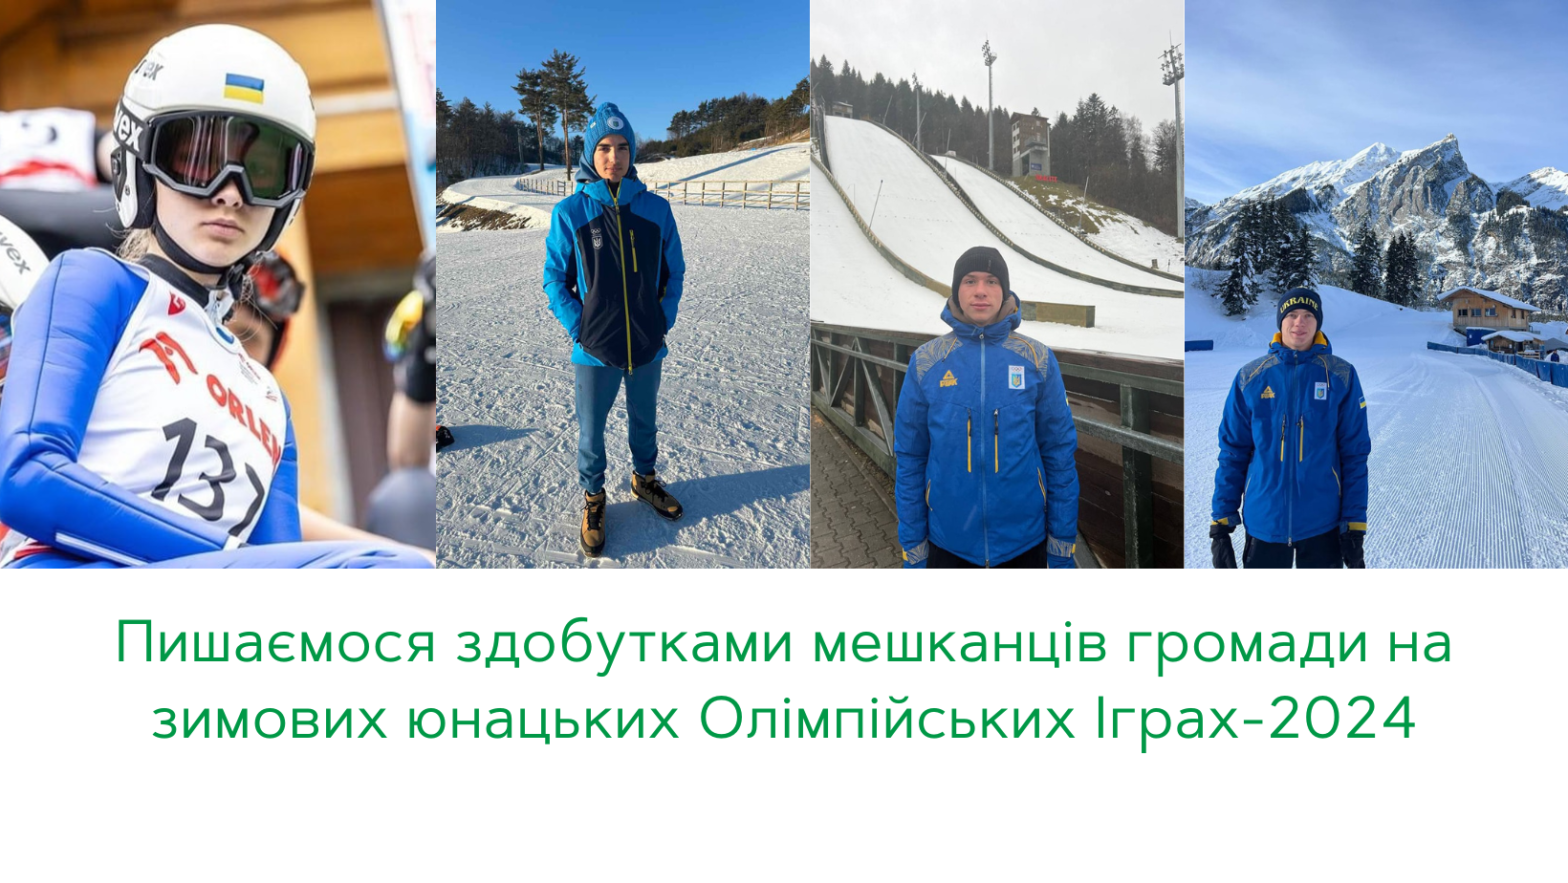 Троє спортсменів Ворохтянської громади потрапили у тридцятку на зимових юнацьких Олімпійських іграх